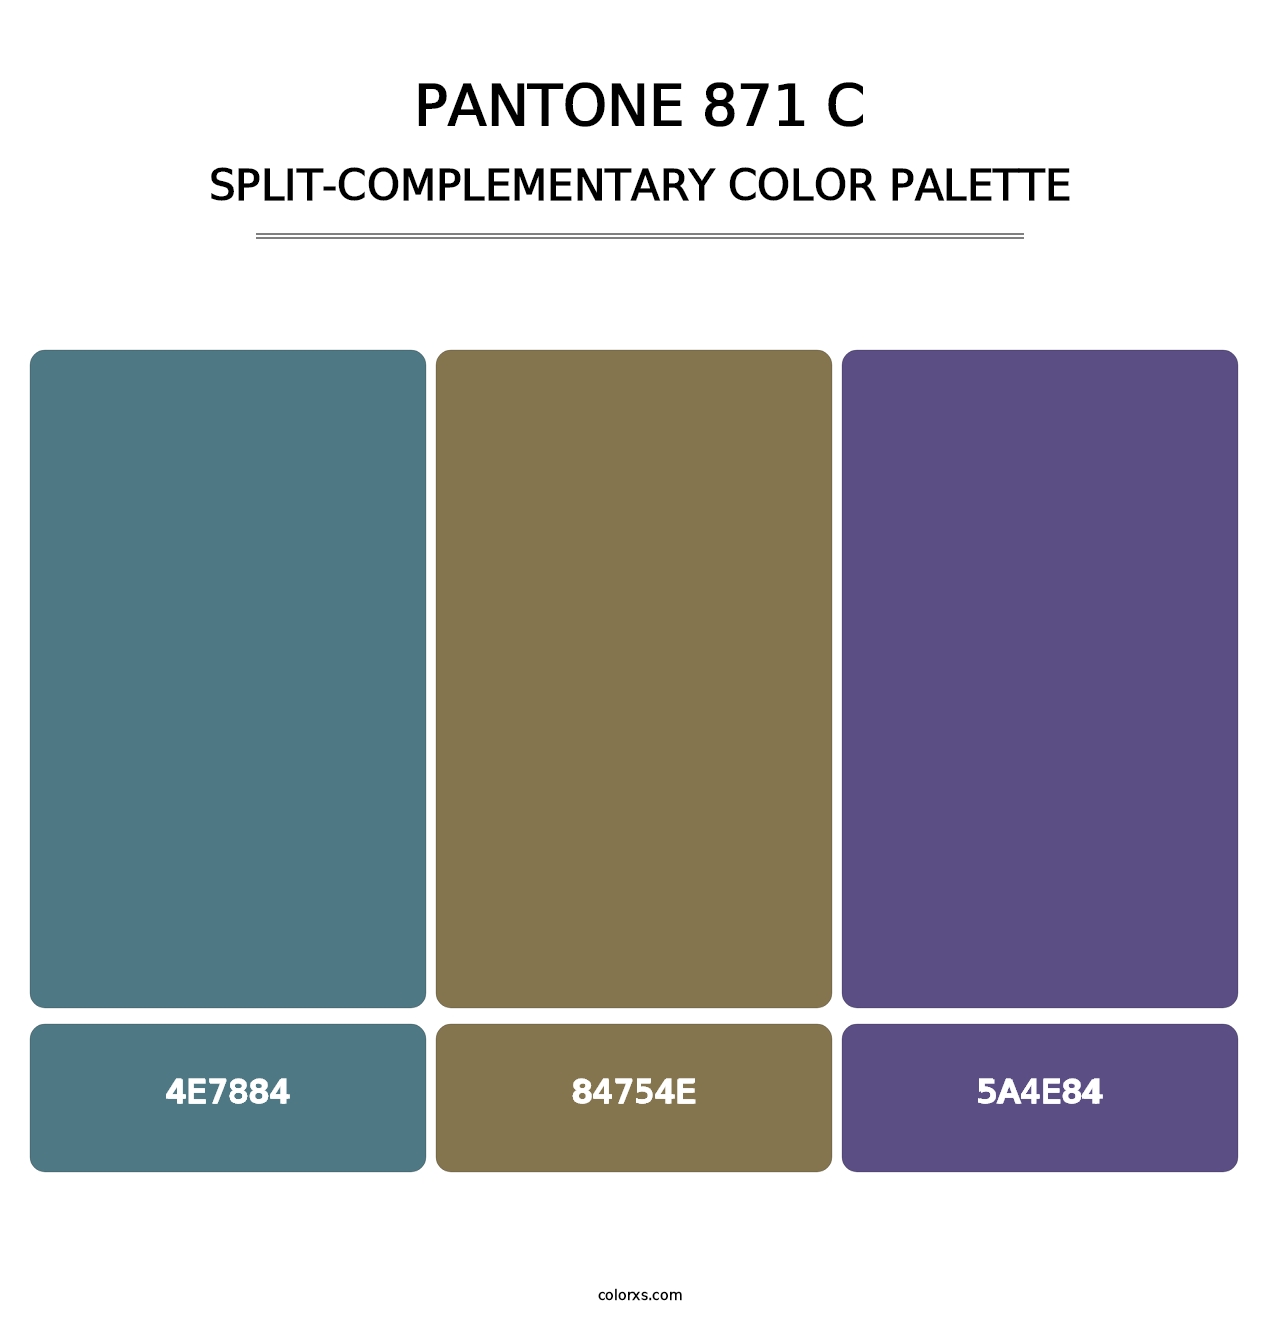 PANTONE 871 C - Split-Complementary Color Palette